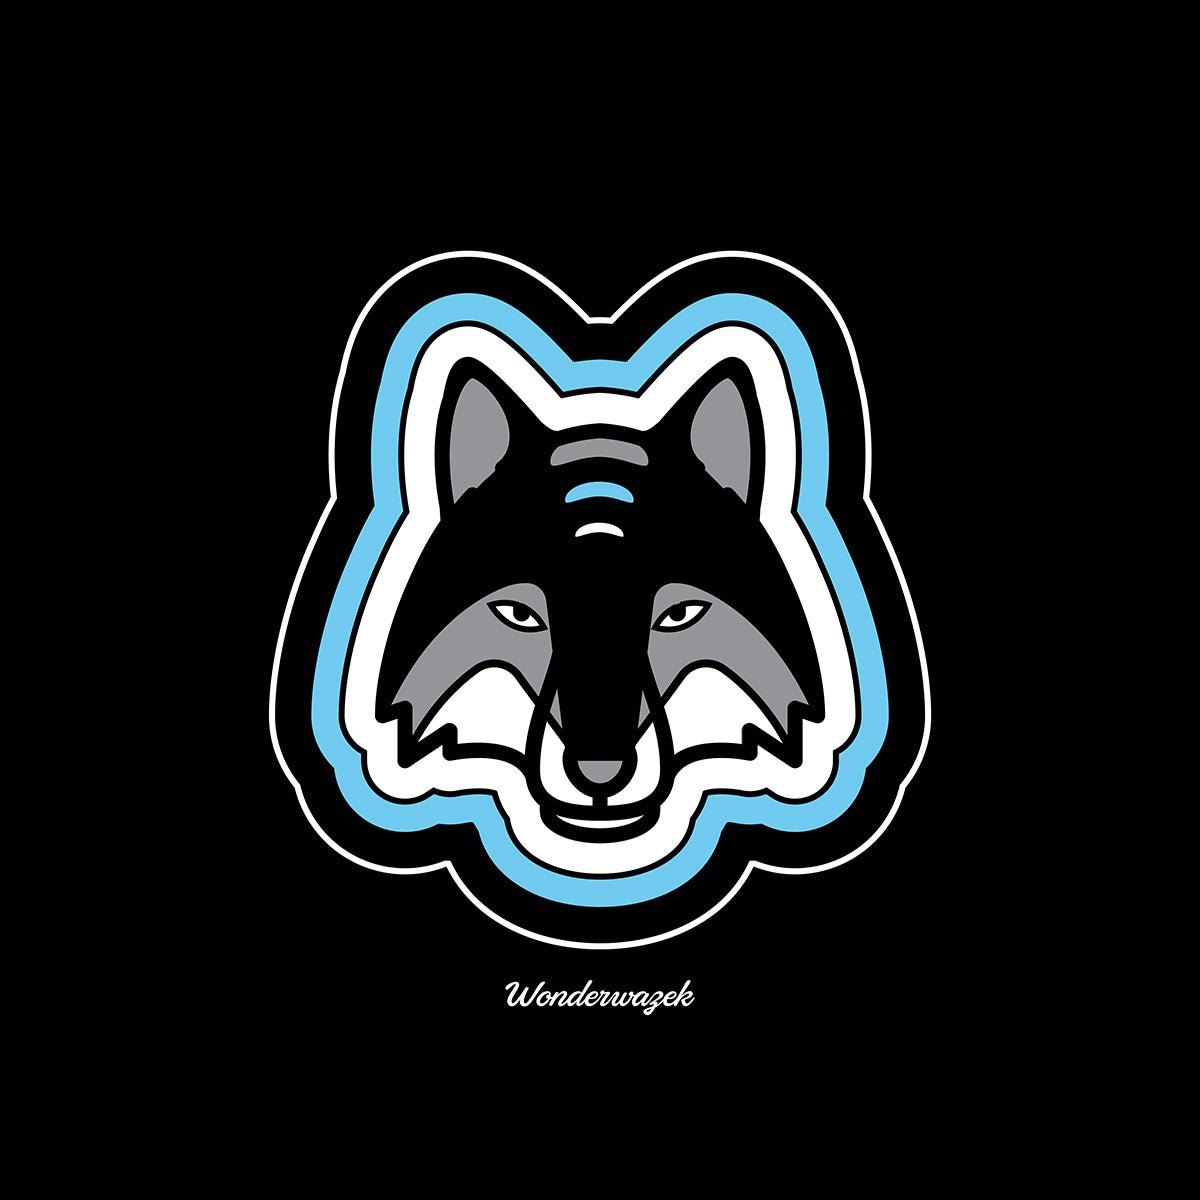 Laptoptasche • einsamer Wolf – blau, schwarz